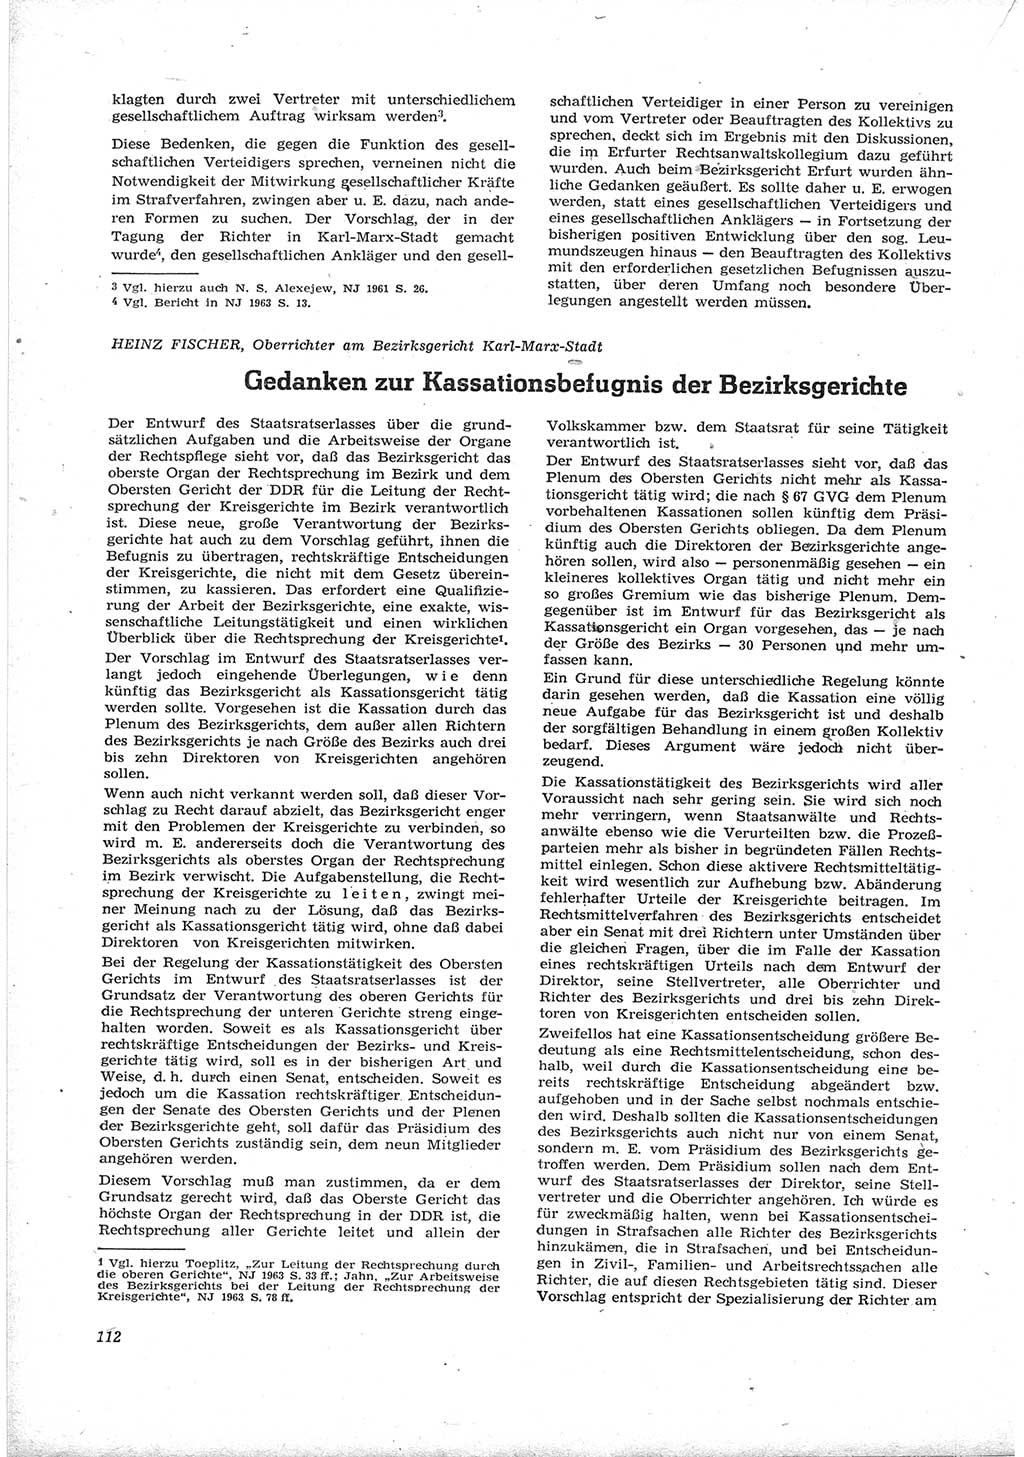 Neue Justiz (NJ), Zeitschrift für Recht und Rechtswissenschaft [Deutsche Demokratische Republik (DDR)], 17. Jahrgang 1963, Seite 112 (NJ DDR 1963, S. 112)